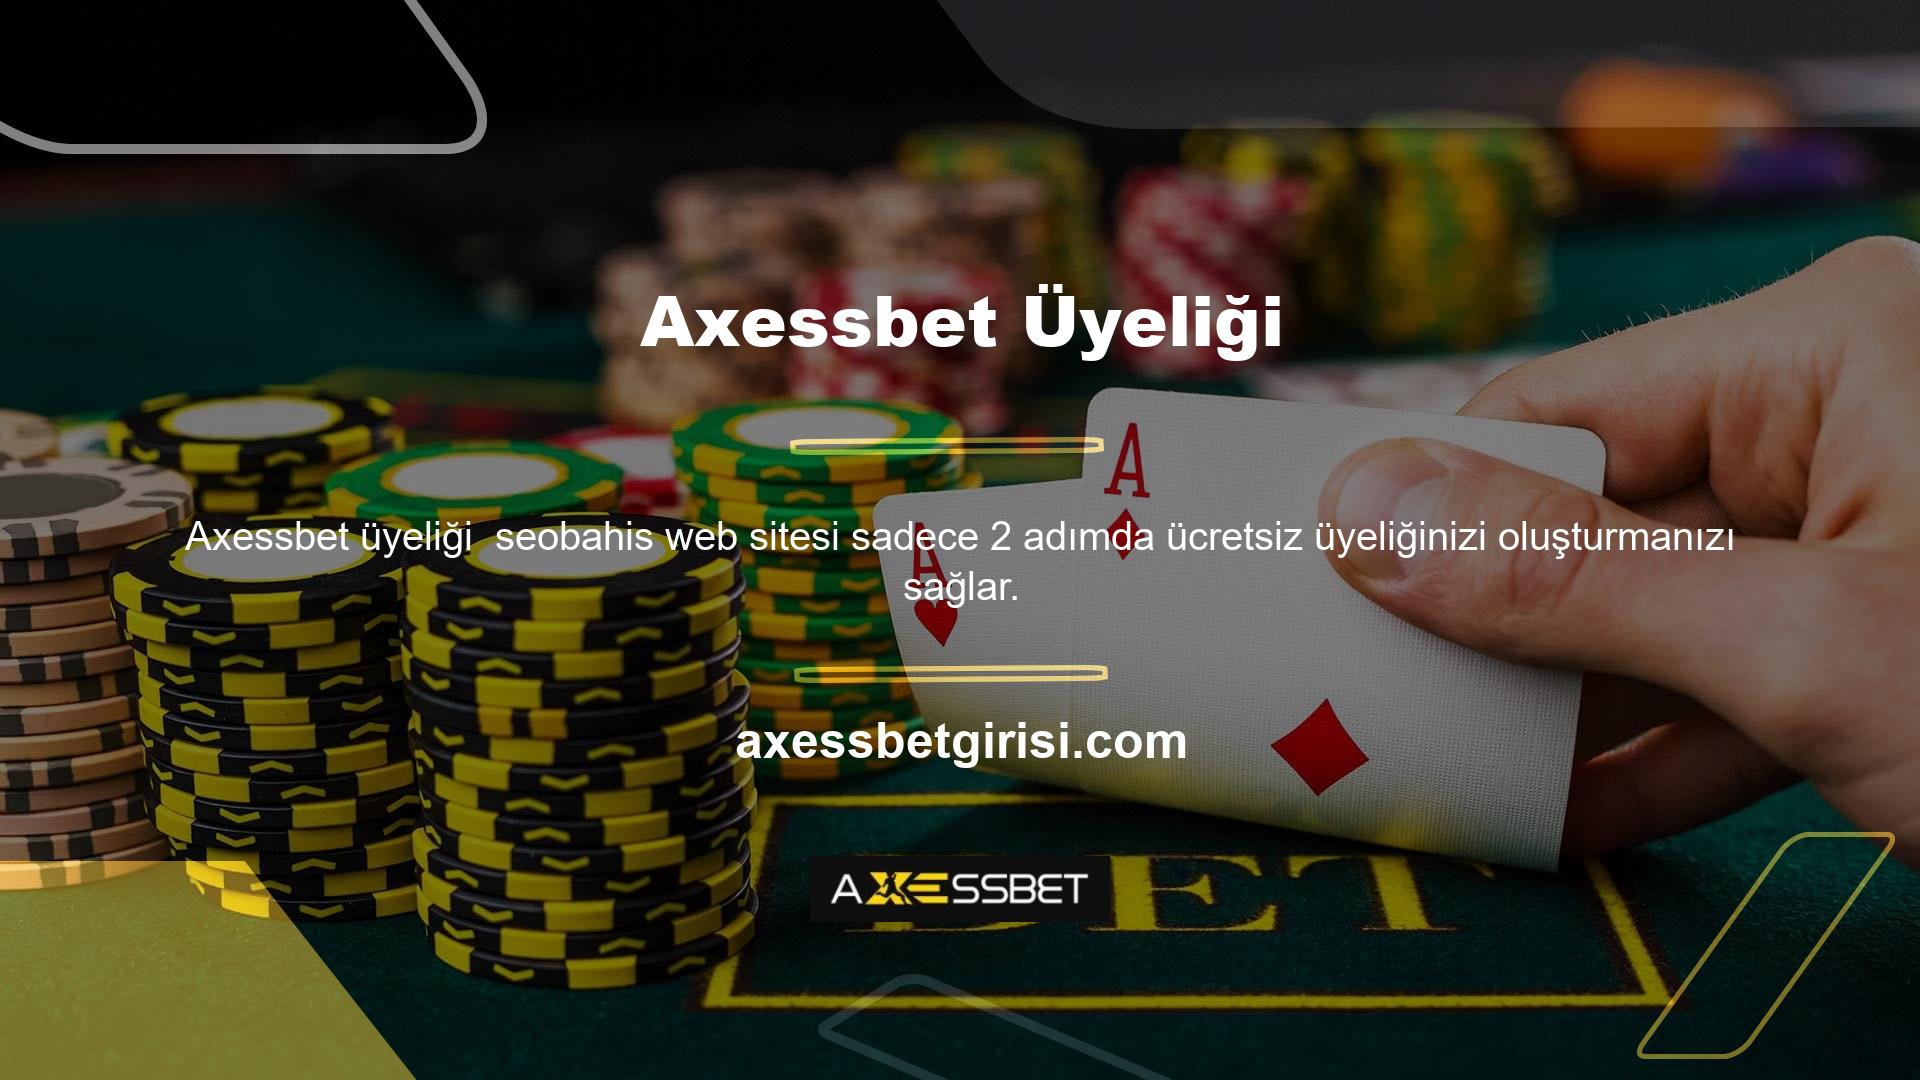 Avrupa'da ve ülkemizde uzun yıllardır faaliyet gösteren online bahis ve casino sitesi Axessbet Bonus'a üye olarak ücretsiz üyelik oluşturabilirsiniz